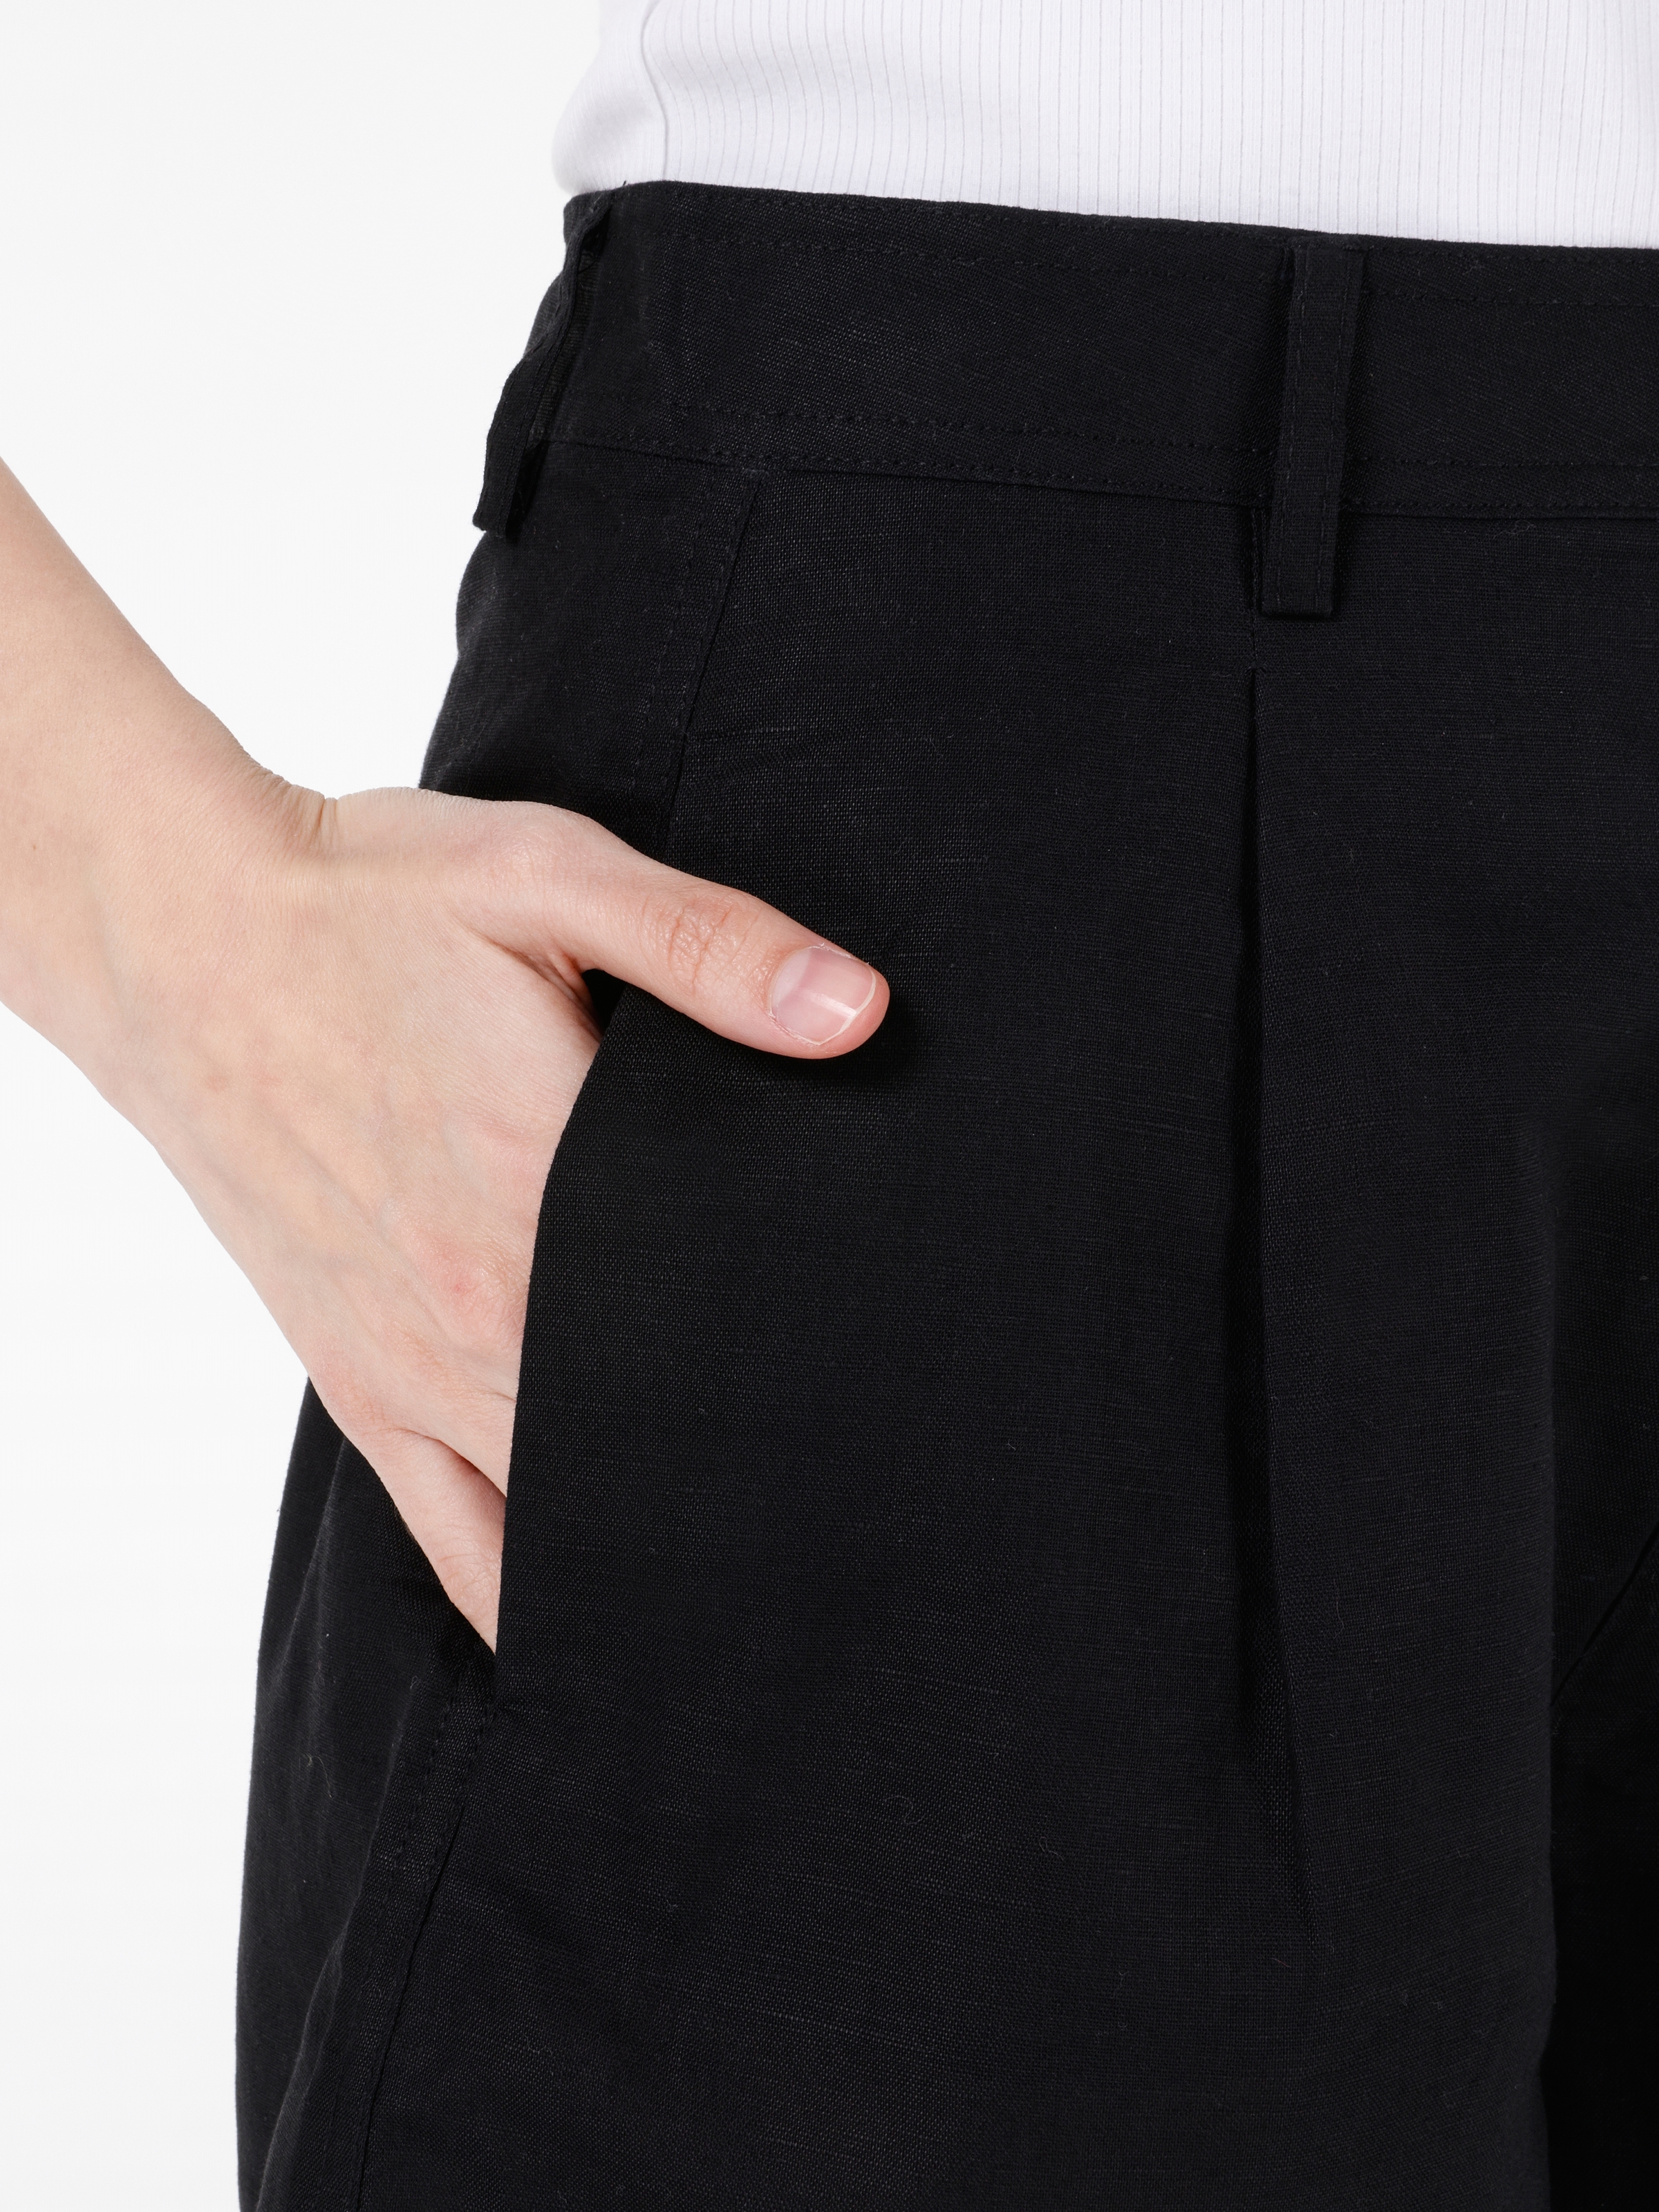 Afișați detalii pentru Short / Pantaloni Scurti De Dama Negru Regular Fit  